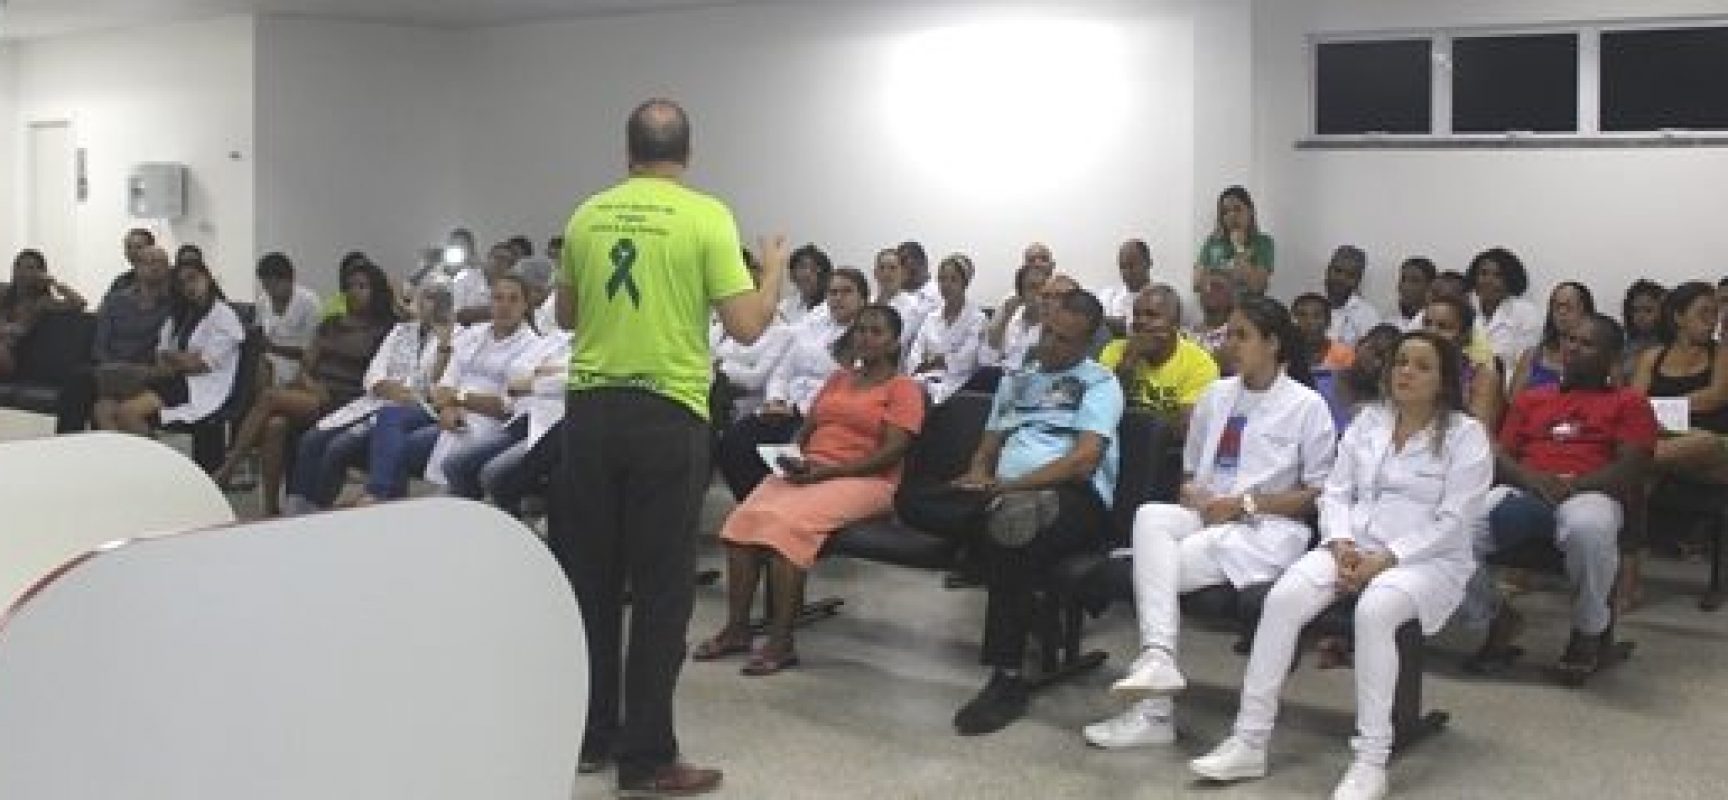 Feira de saúde do Hospital Costa do Cacau teve apoio da Prefeitura de Ilhéus